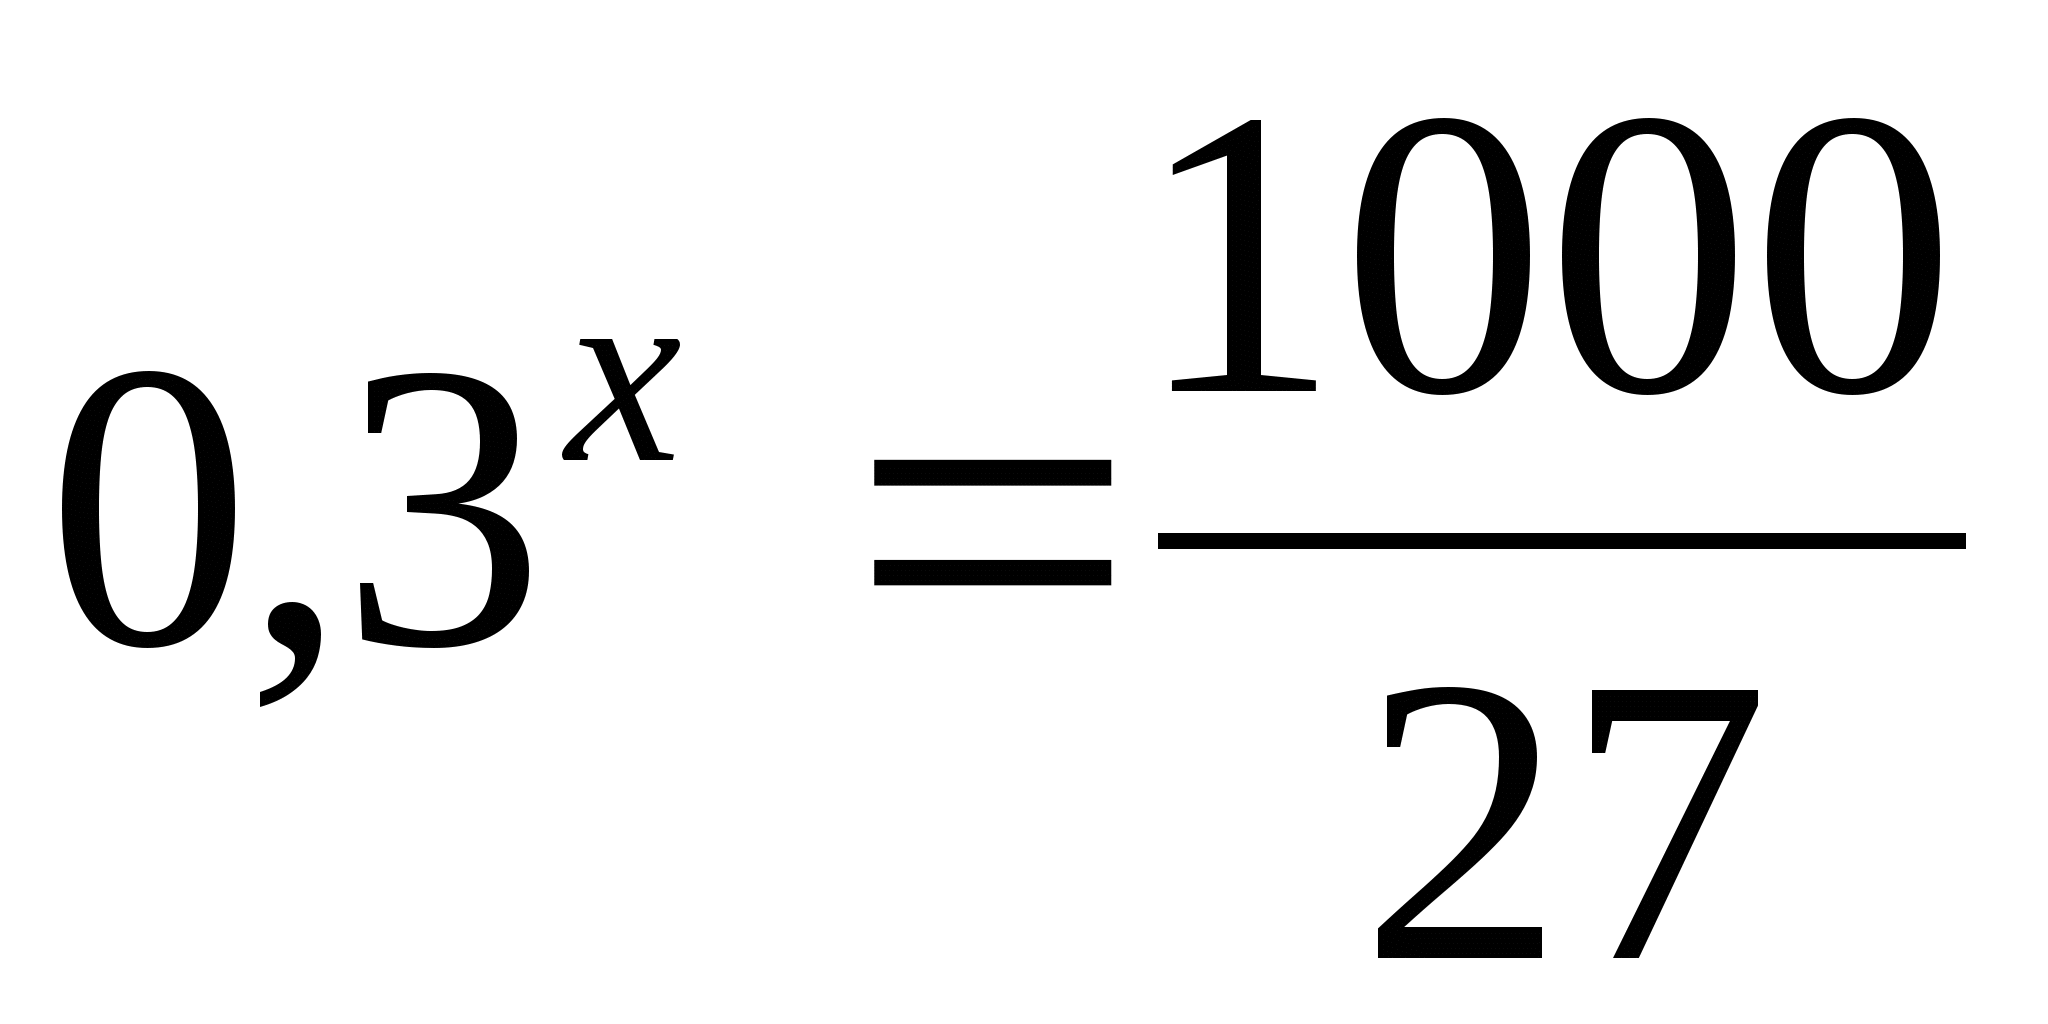 Промежуточная аттестация по математике (2 варианта)